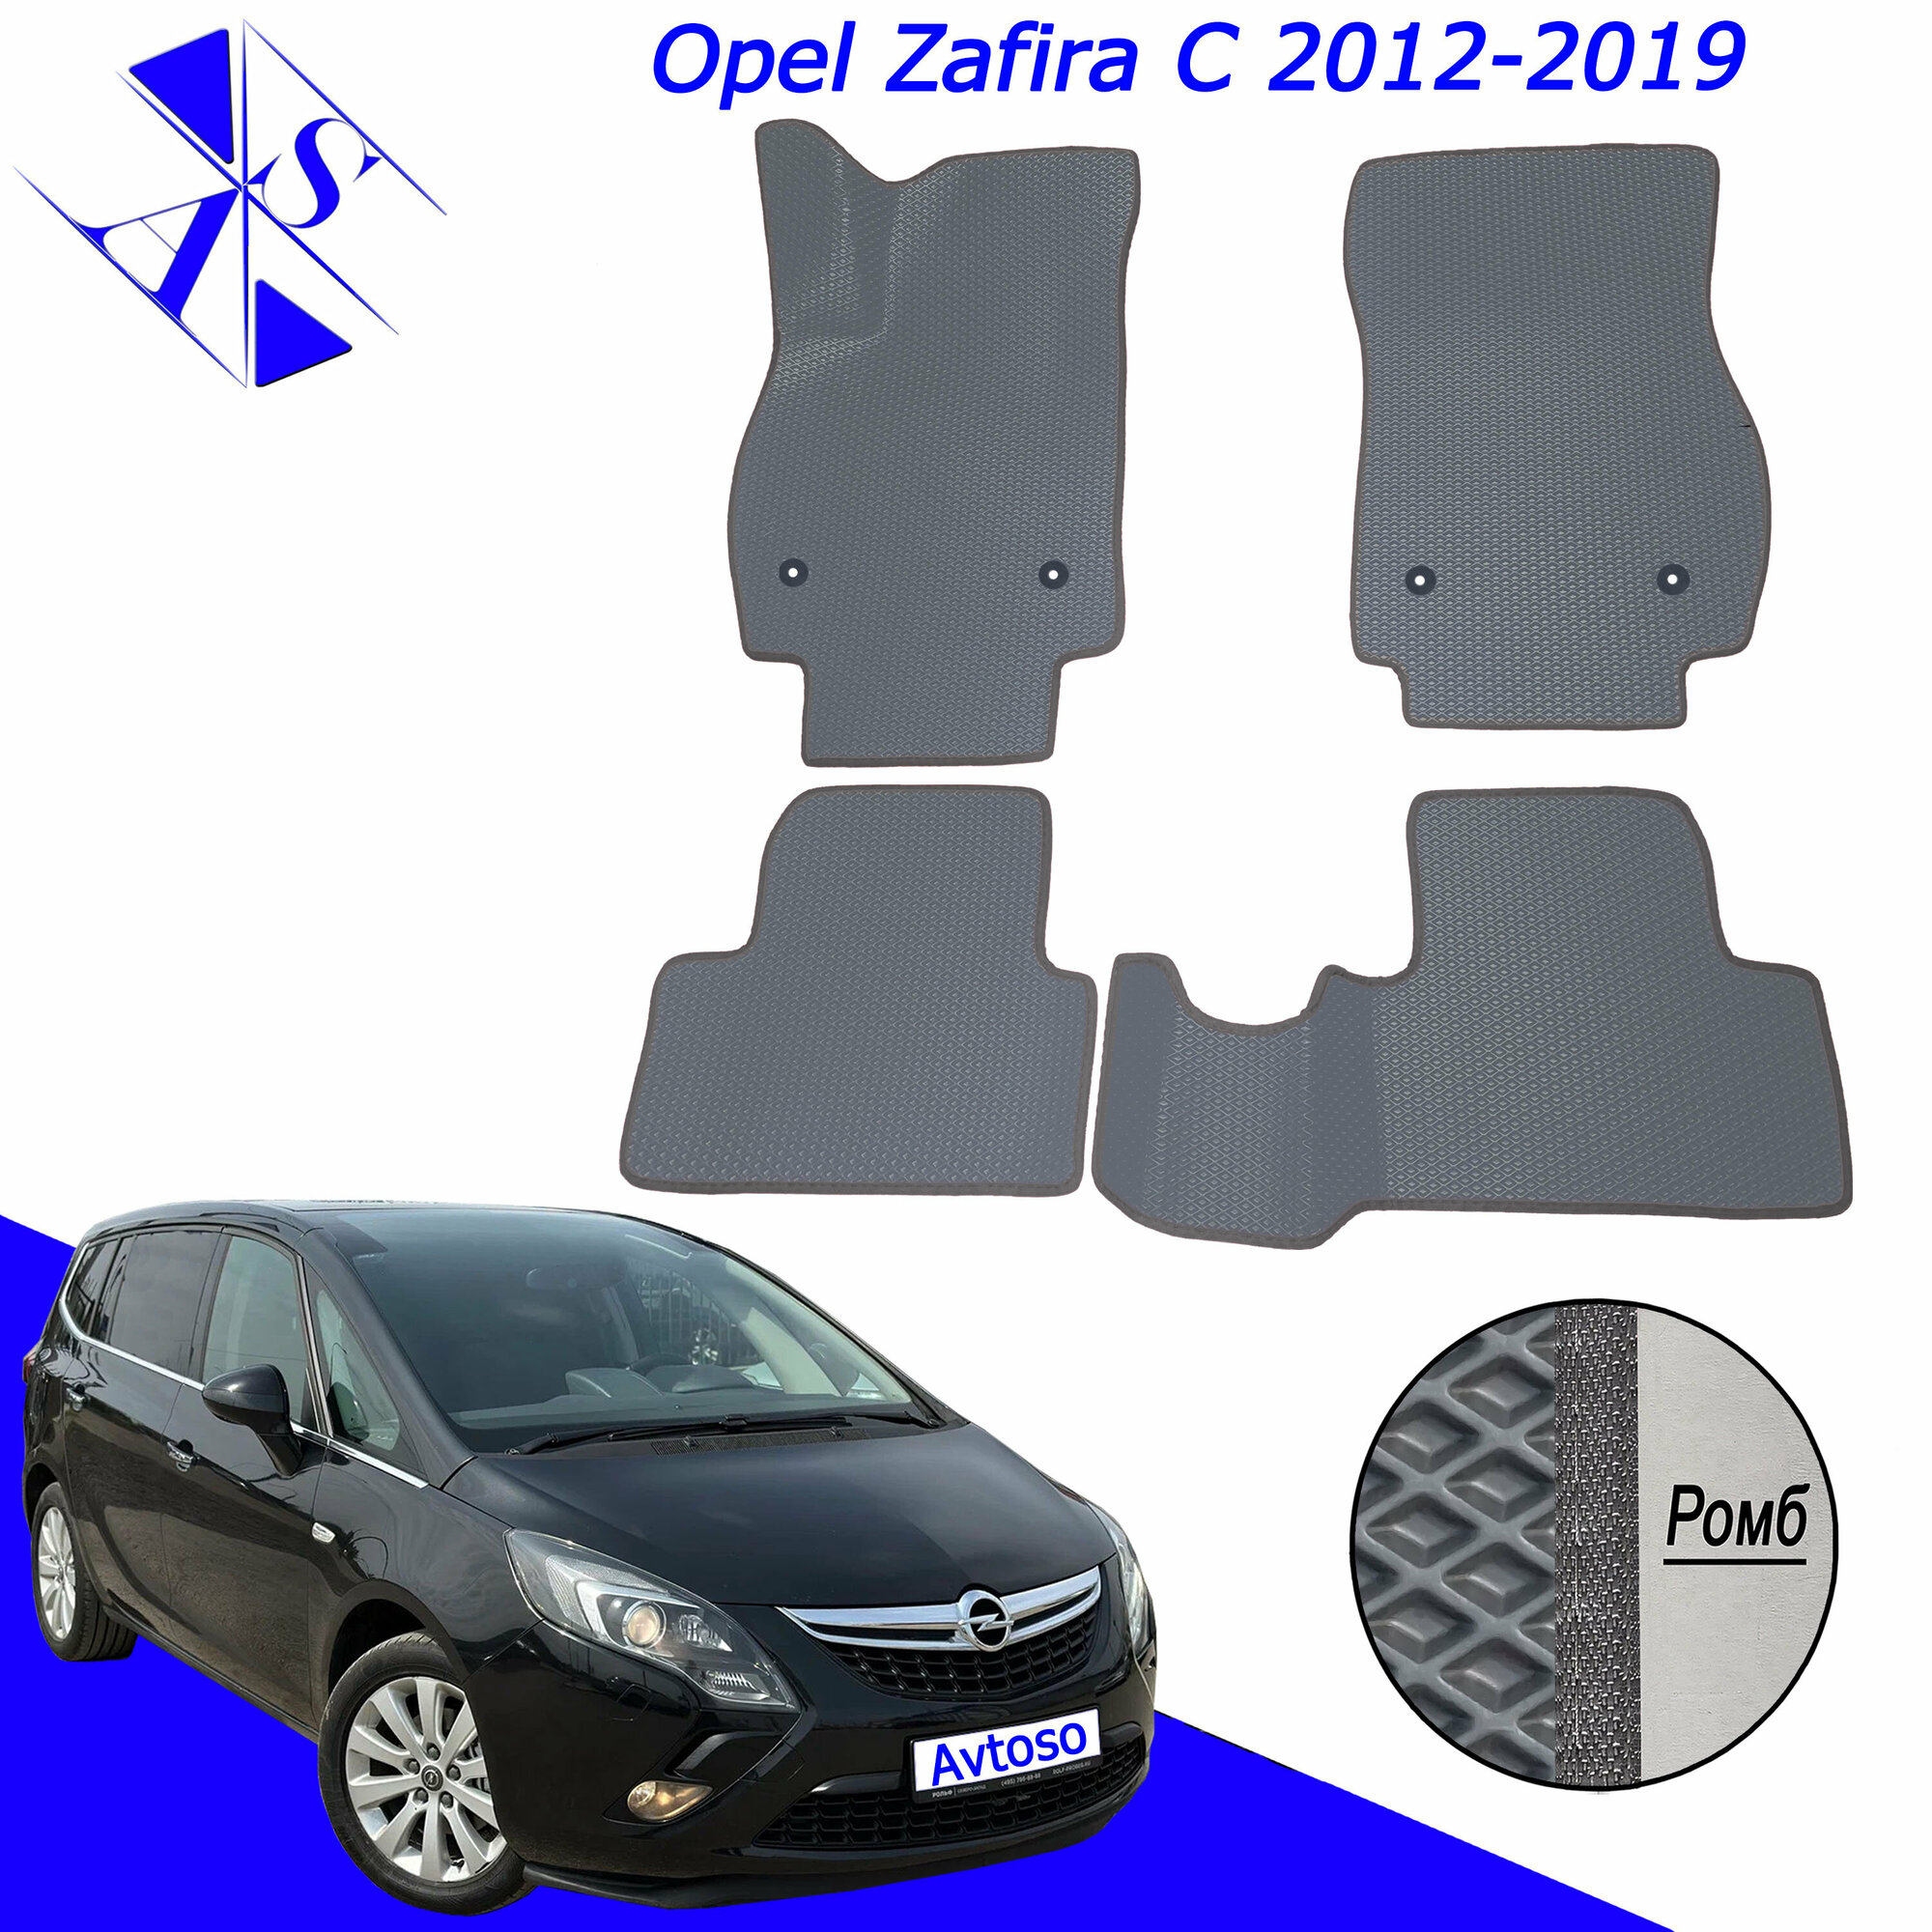 Автомобильные коврики ЕВА/ЭВА/EVA для Opel Zafira C / Опель Зафира Ц 2012-2019 серый темно серый